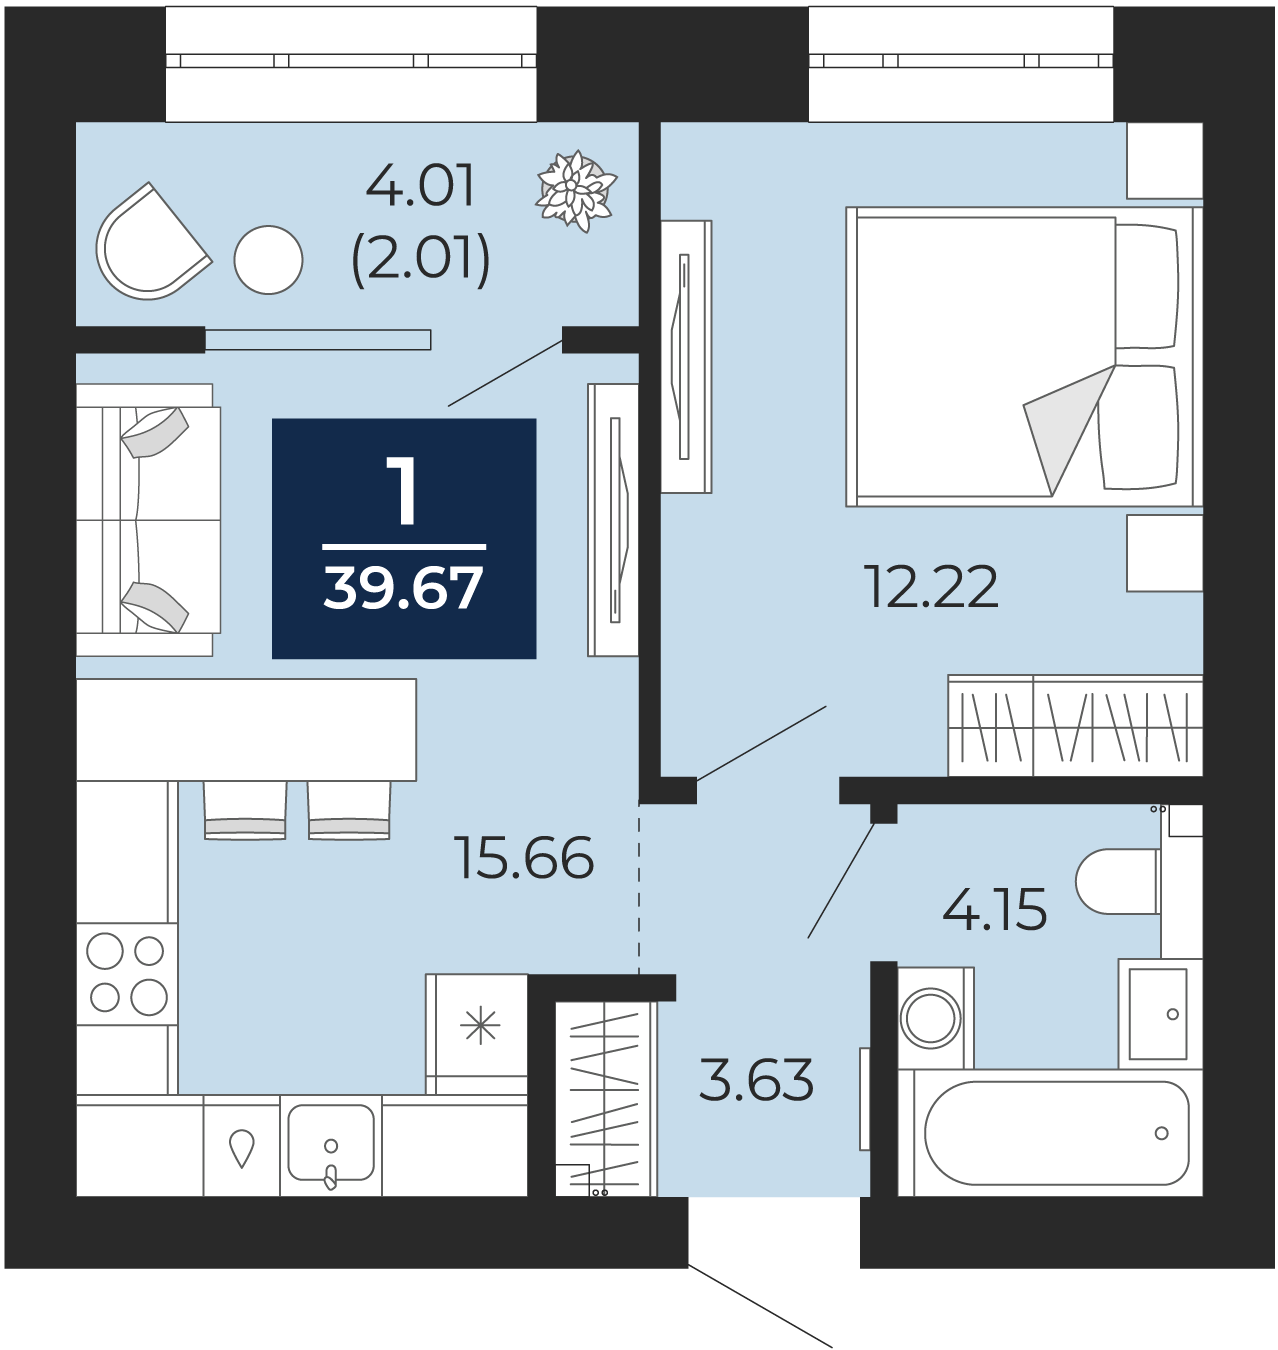 Квартира № 3, 1-комнатная, 39.67 кв. м, 2 этаж